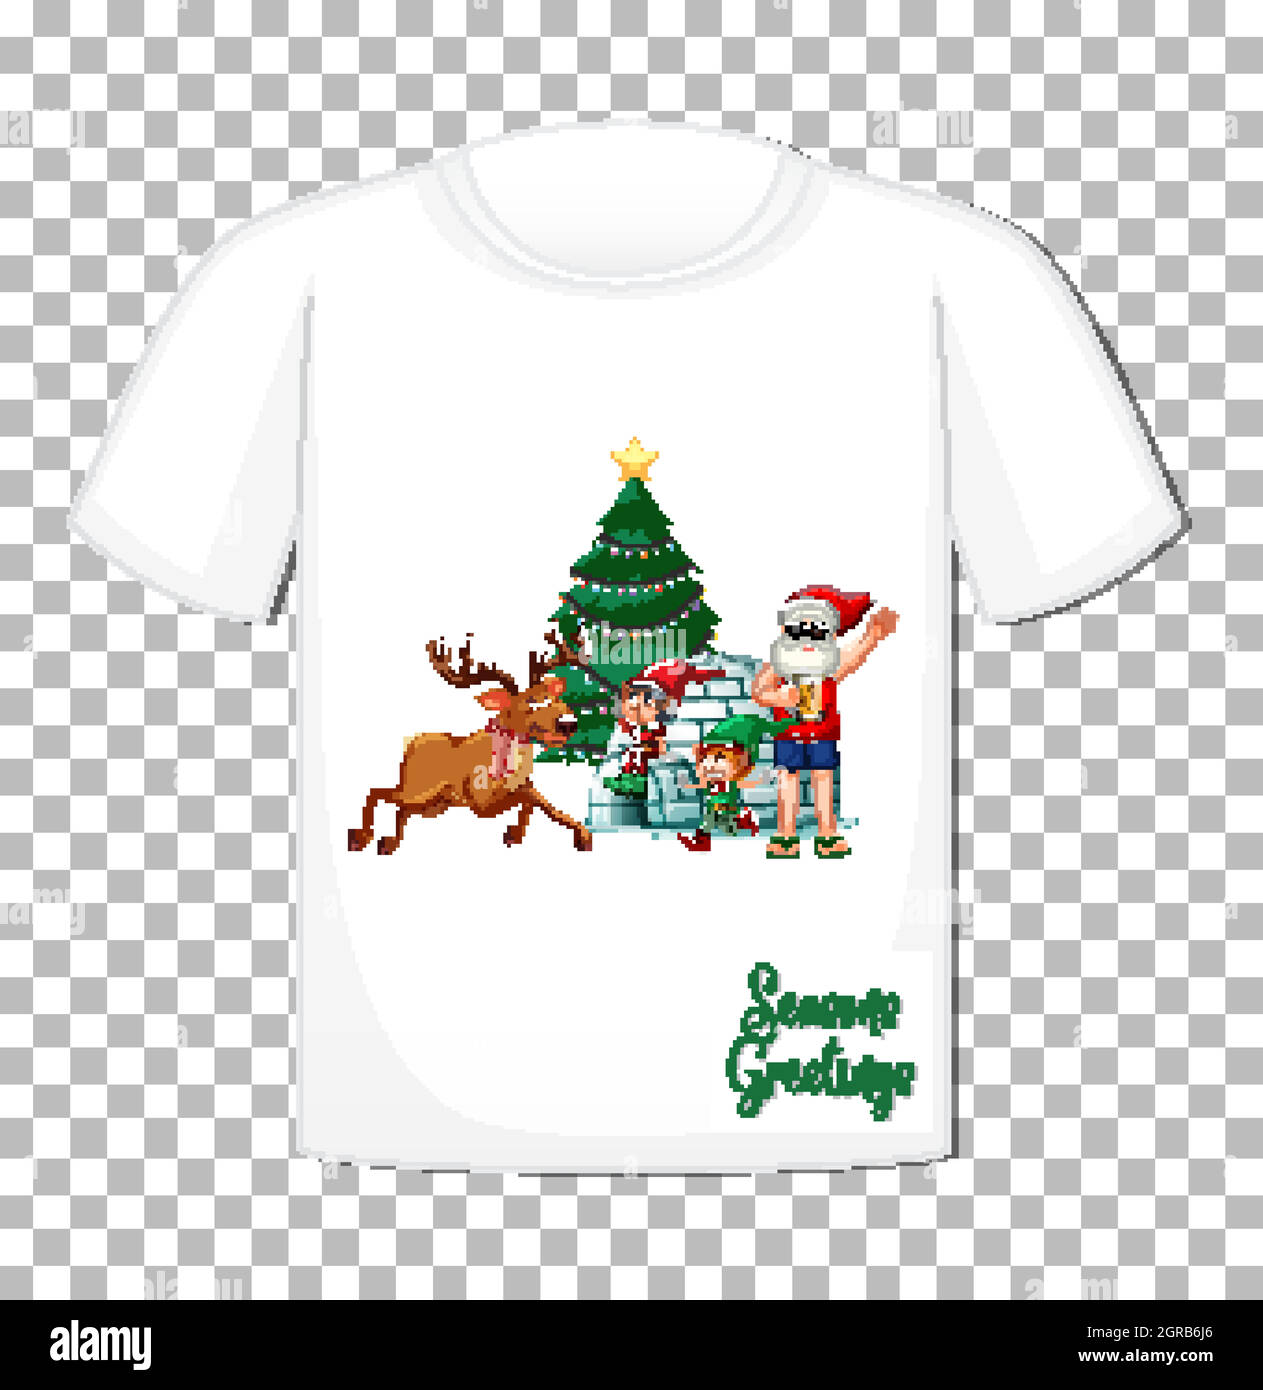 Le Père Noël avec de nombreux cadeaux sur le thème de Noël sur un t-shirt sur fond transparent Illustration de Vecteur